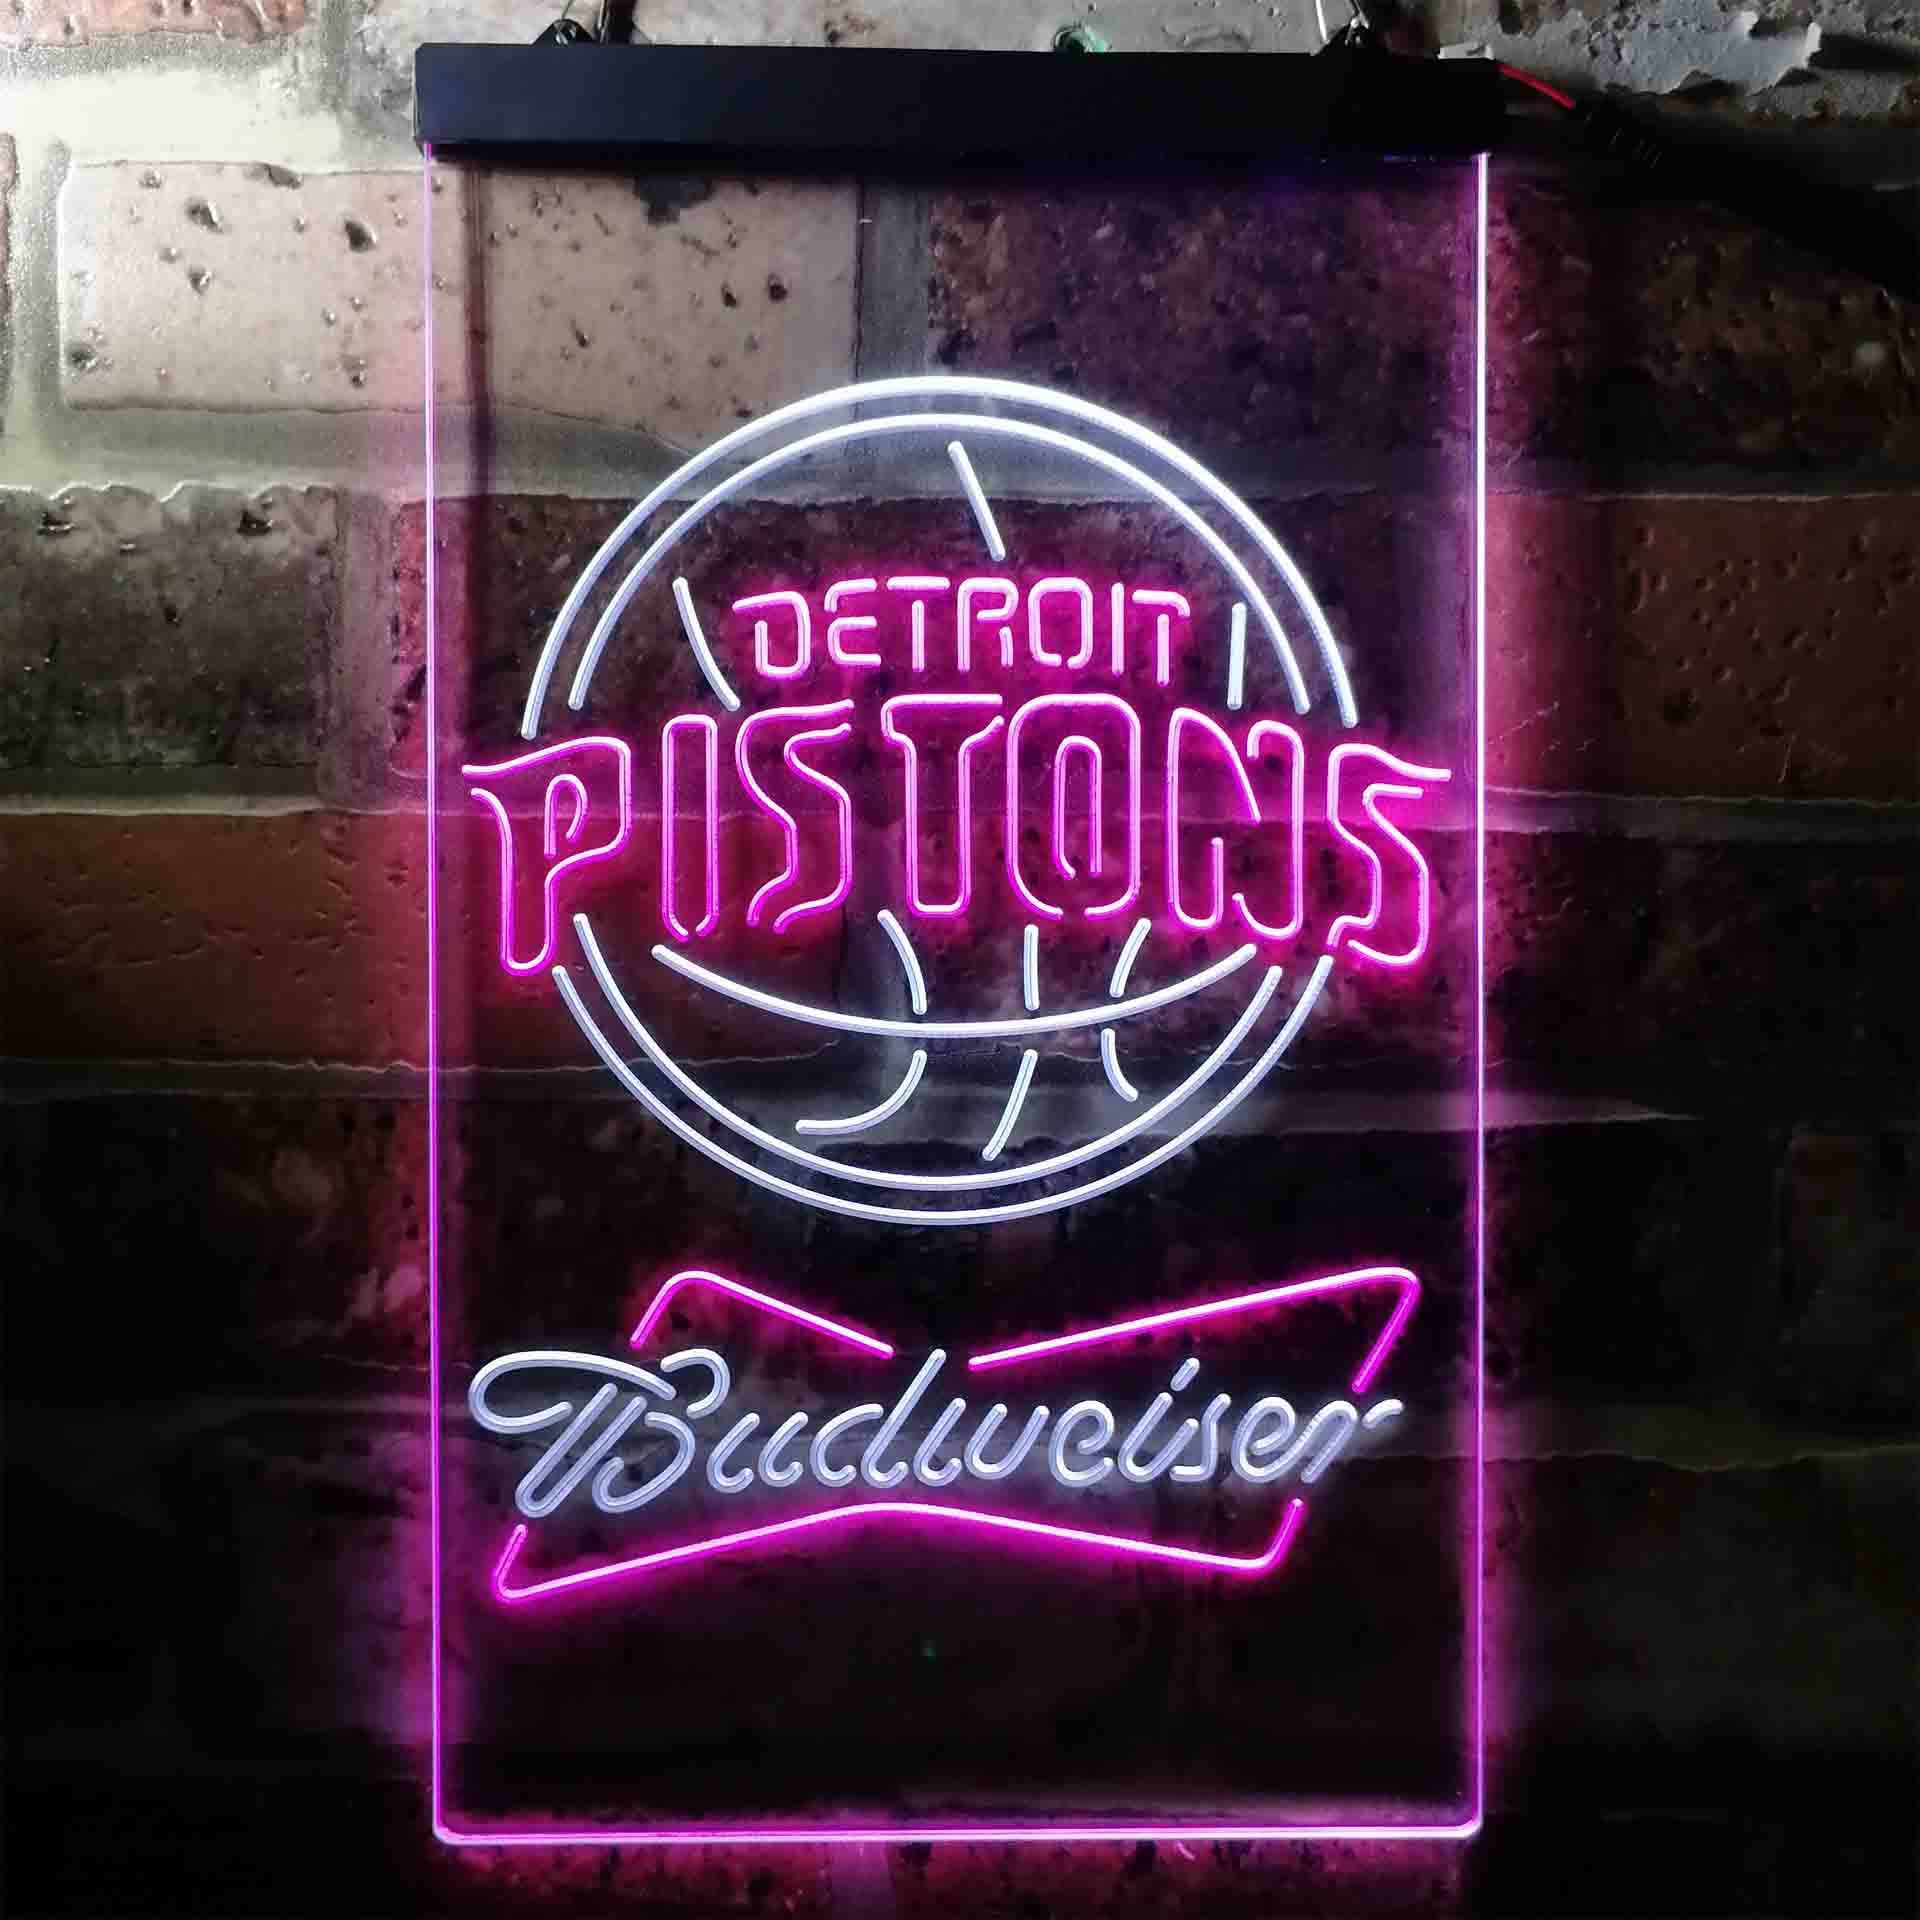 Detroit Pistons Budweiser Neon-Like LED Sign